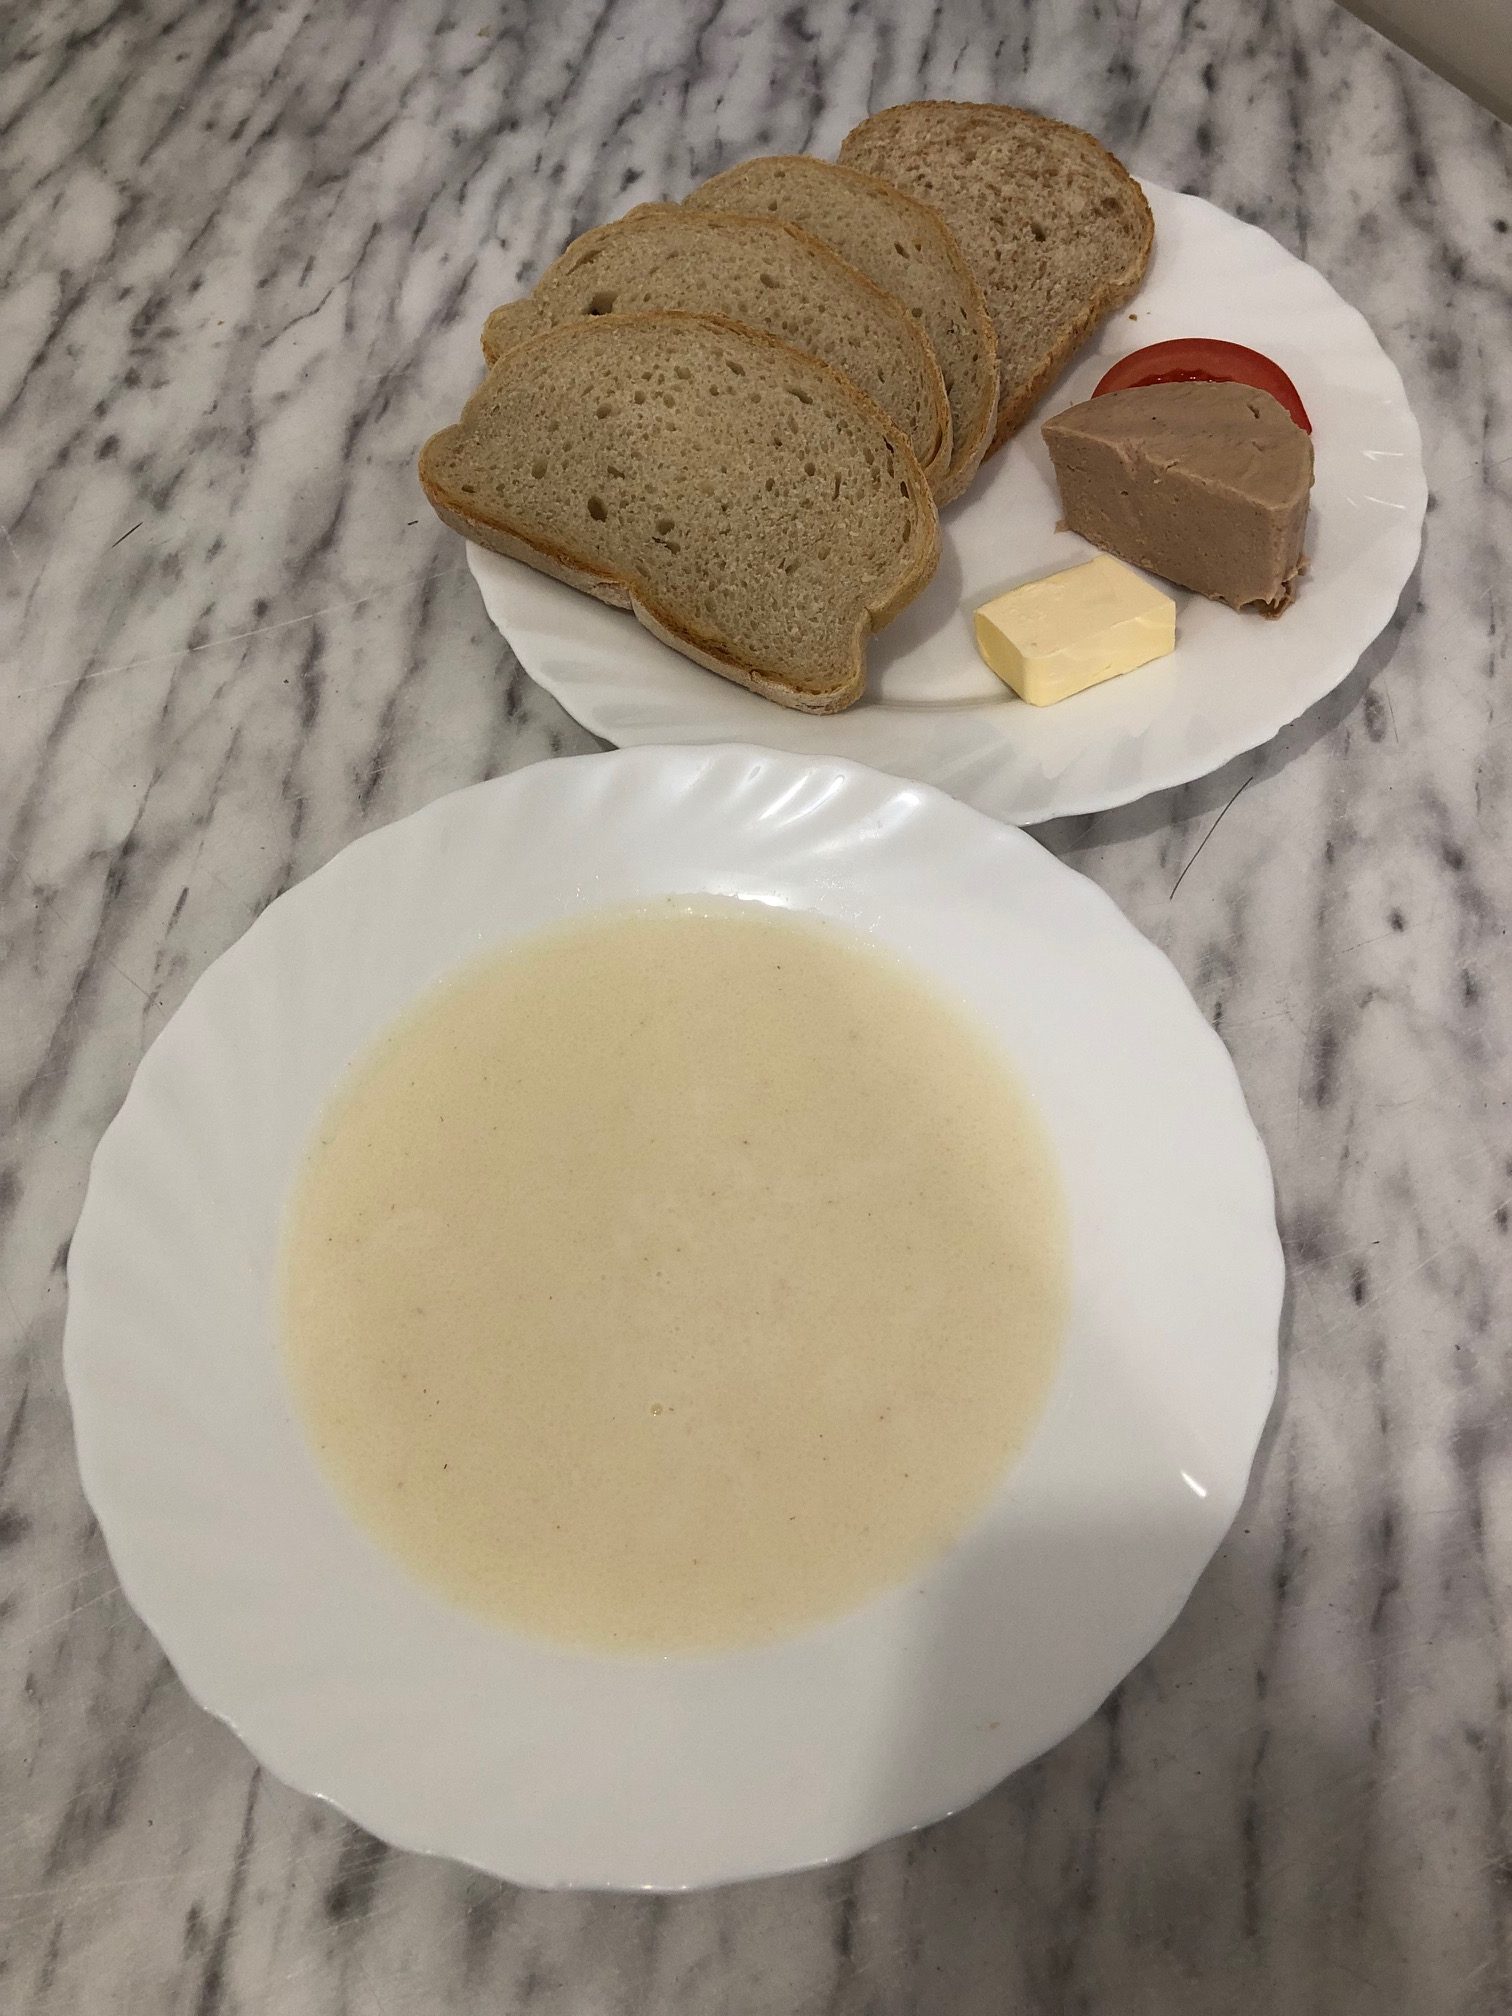 zdjęcie przedstawia śniadanie złożone z czterech skibek chleba, pasztetu, pomidora i masła. Na drugim talerzu zupa mleczna